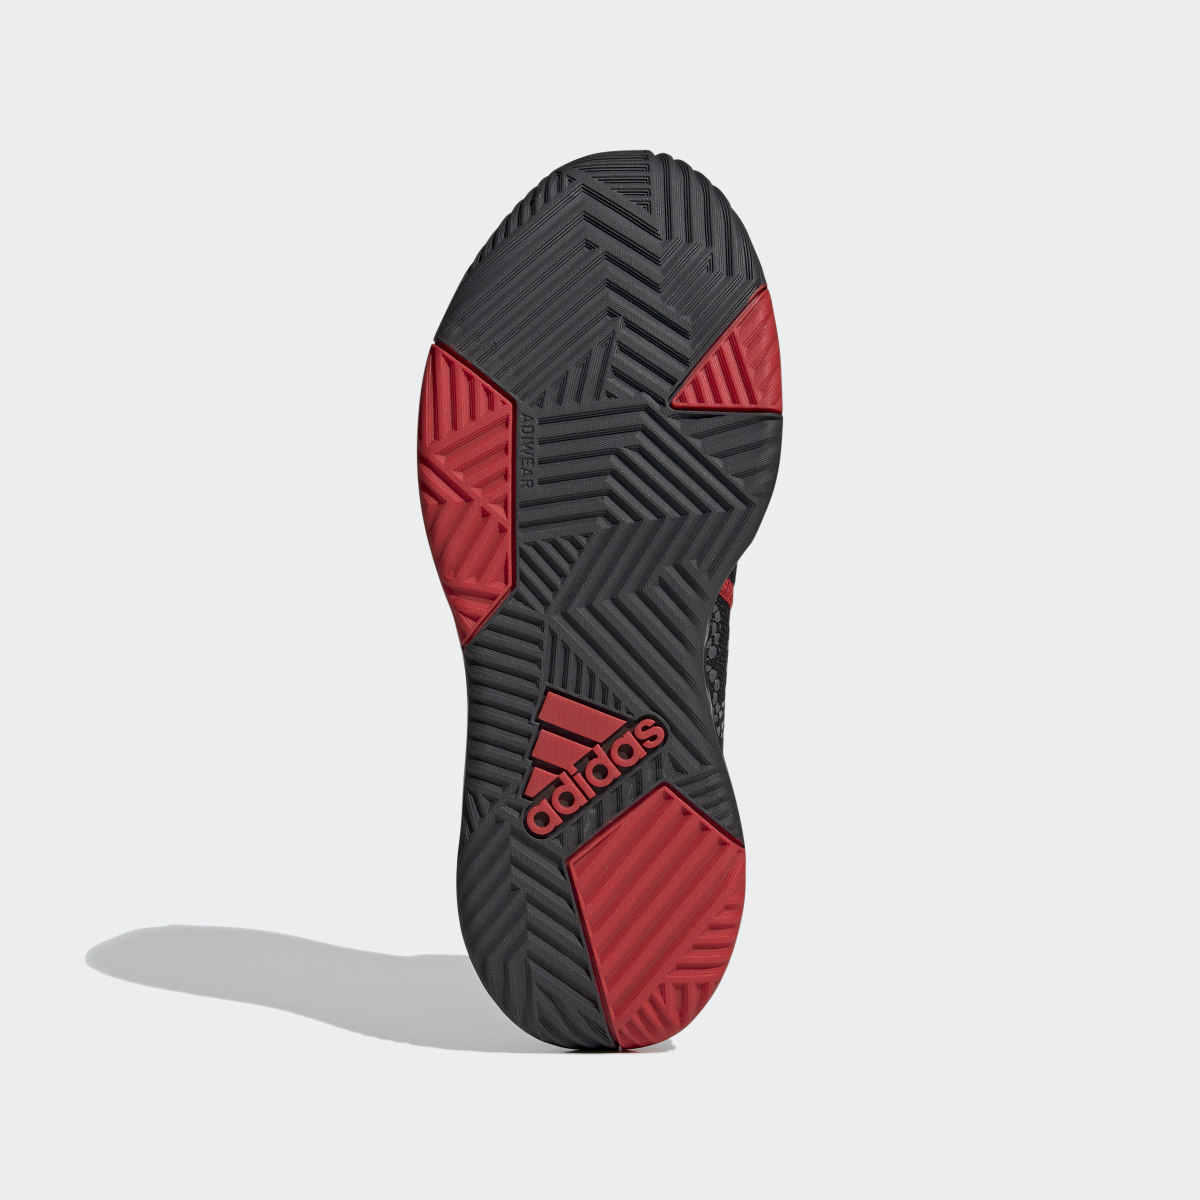 Adidas Ownthegame Ayakkabı. 4